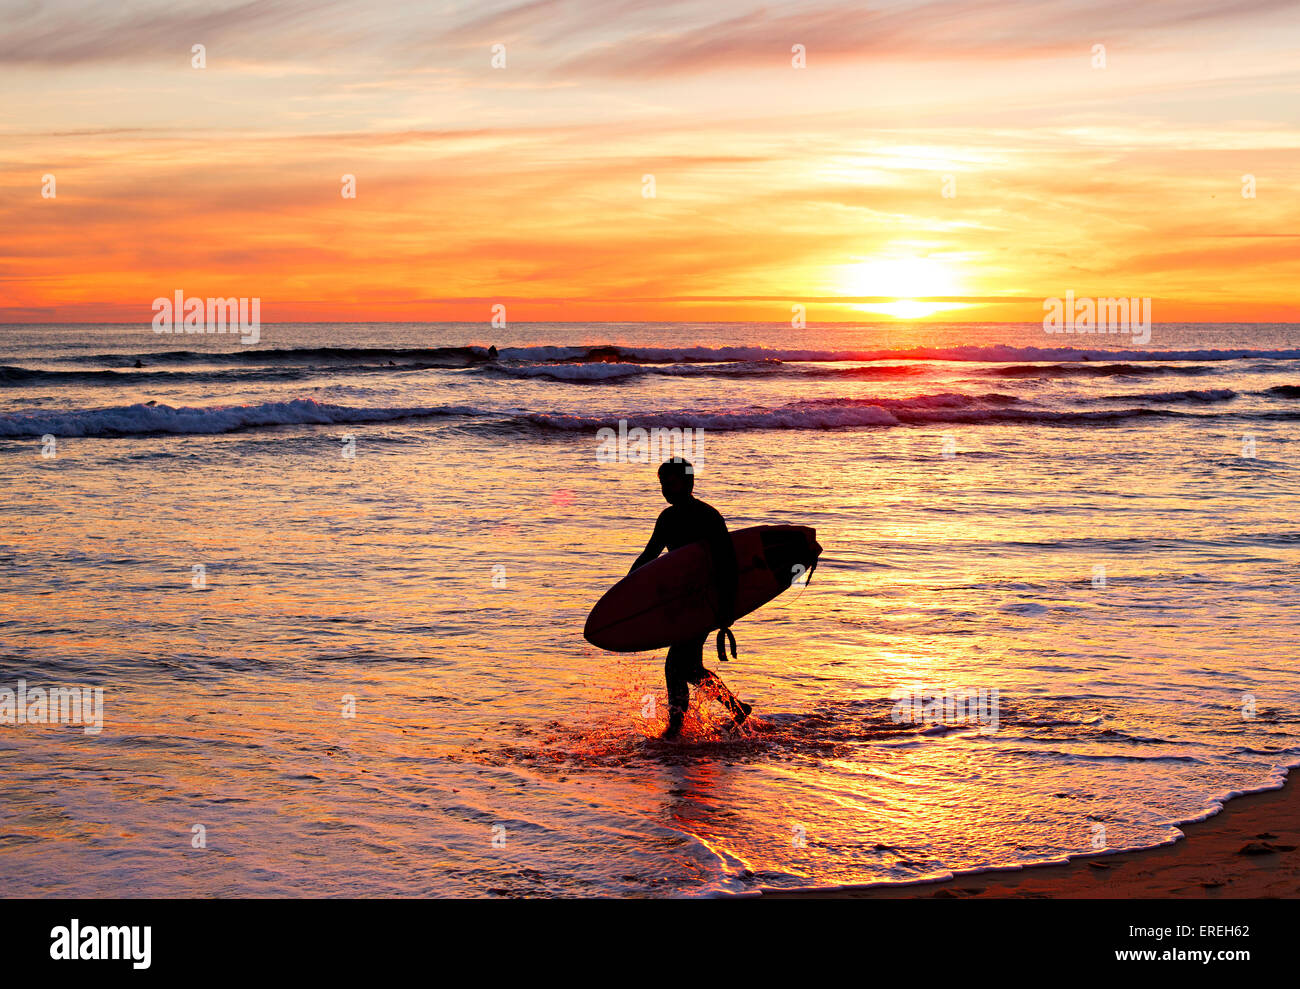 Silhouette d'un surfer avec une planche de surf sur la plage au coucher du soleil. Portugal Banque D'Images